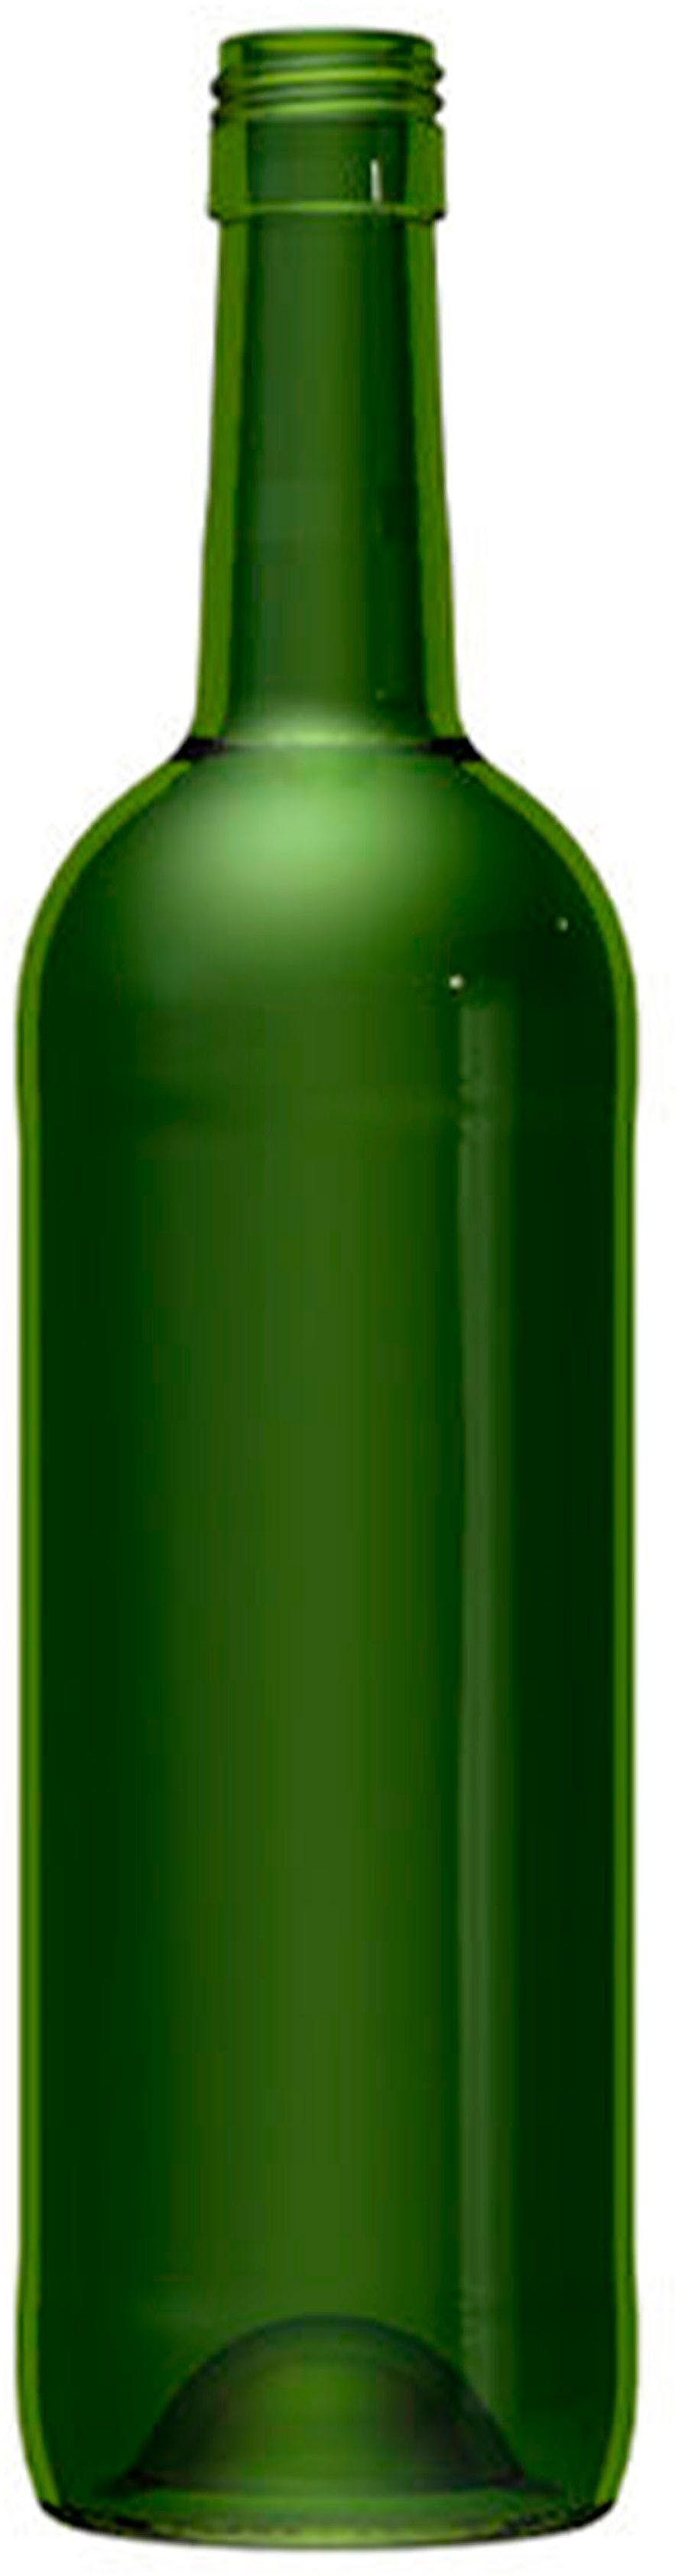 Bottiglia bordolese   STD 750 ml BG-Vite